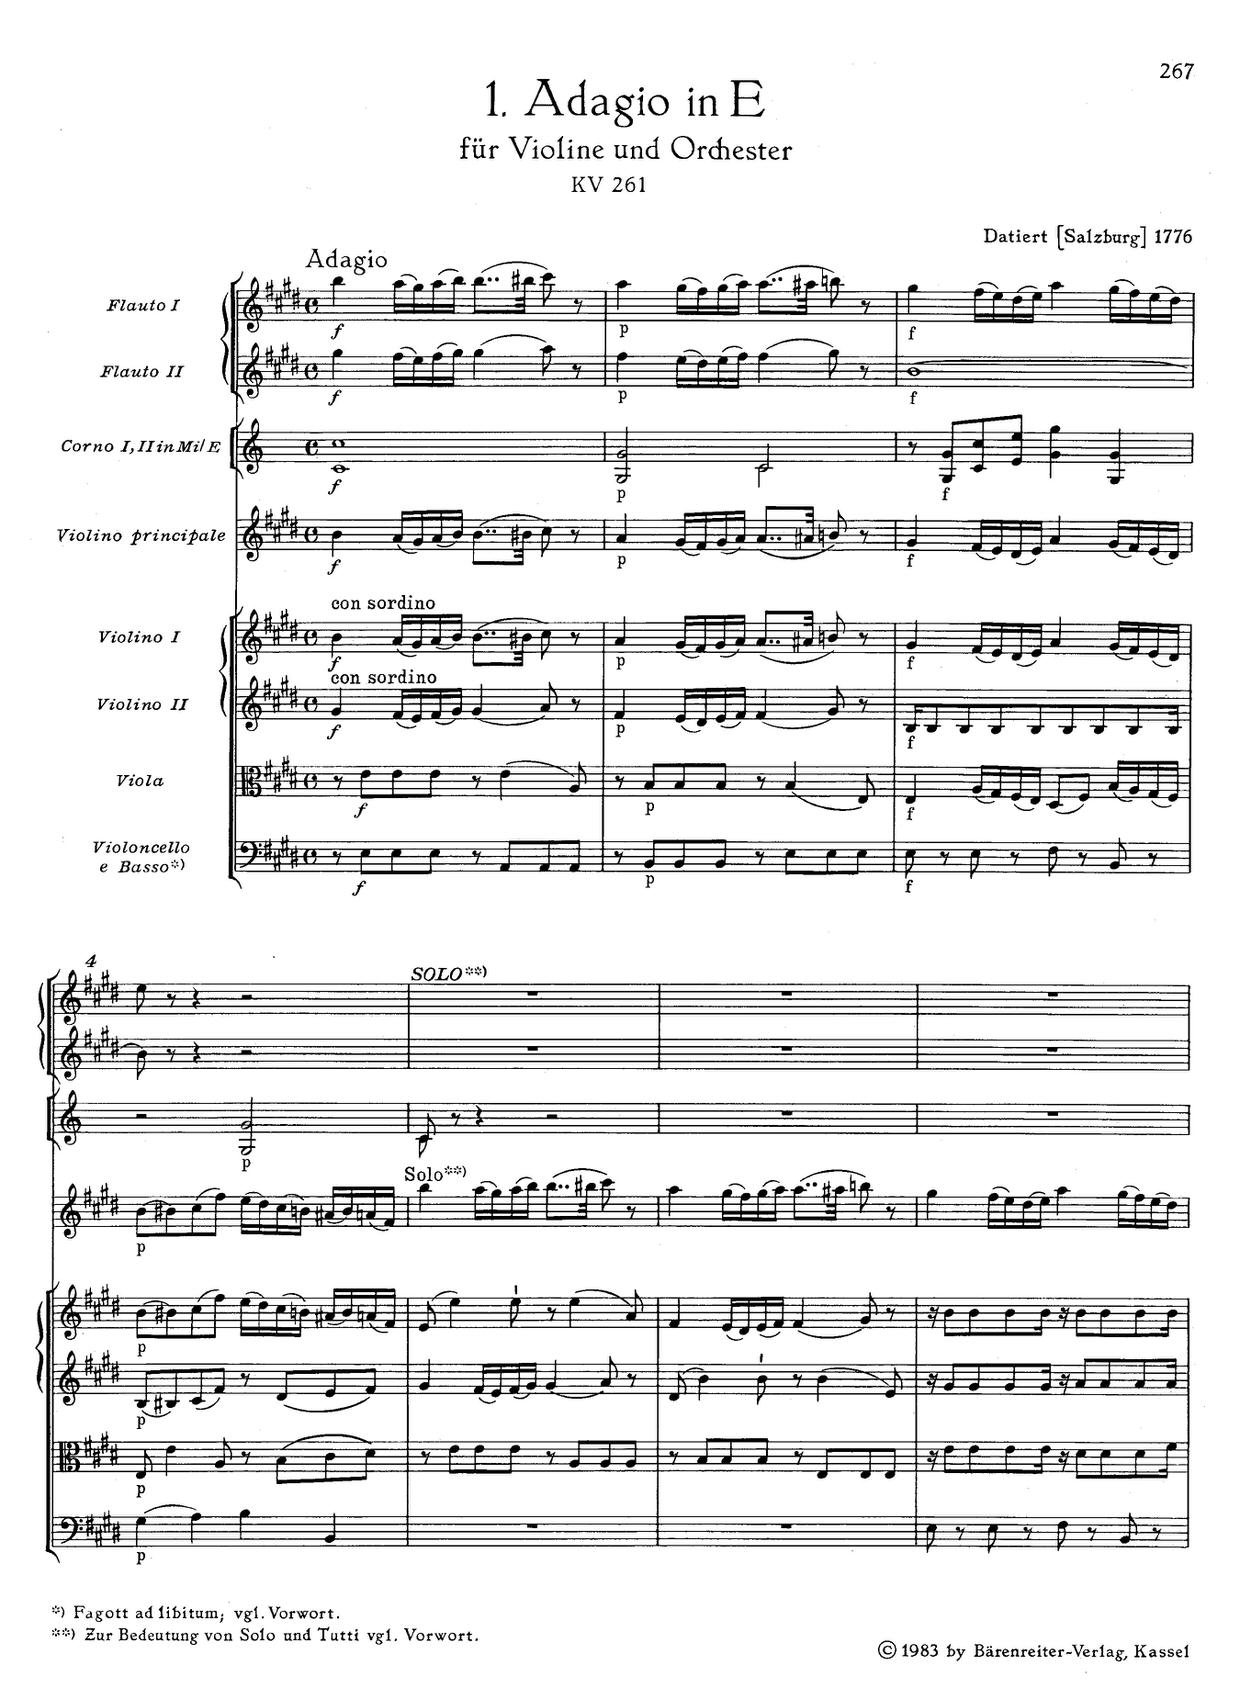 Adagio in E Major, K. 261琴谱